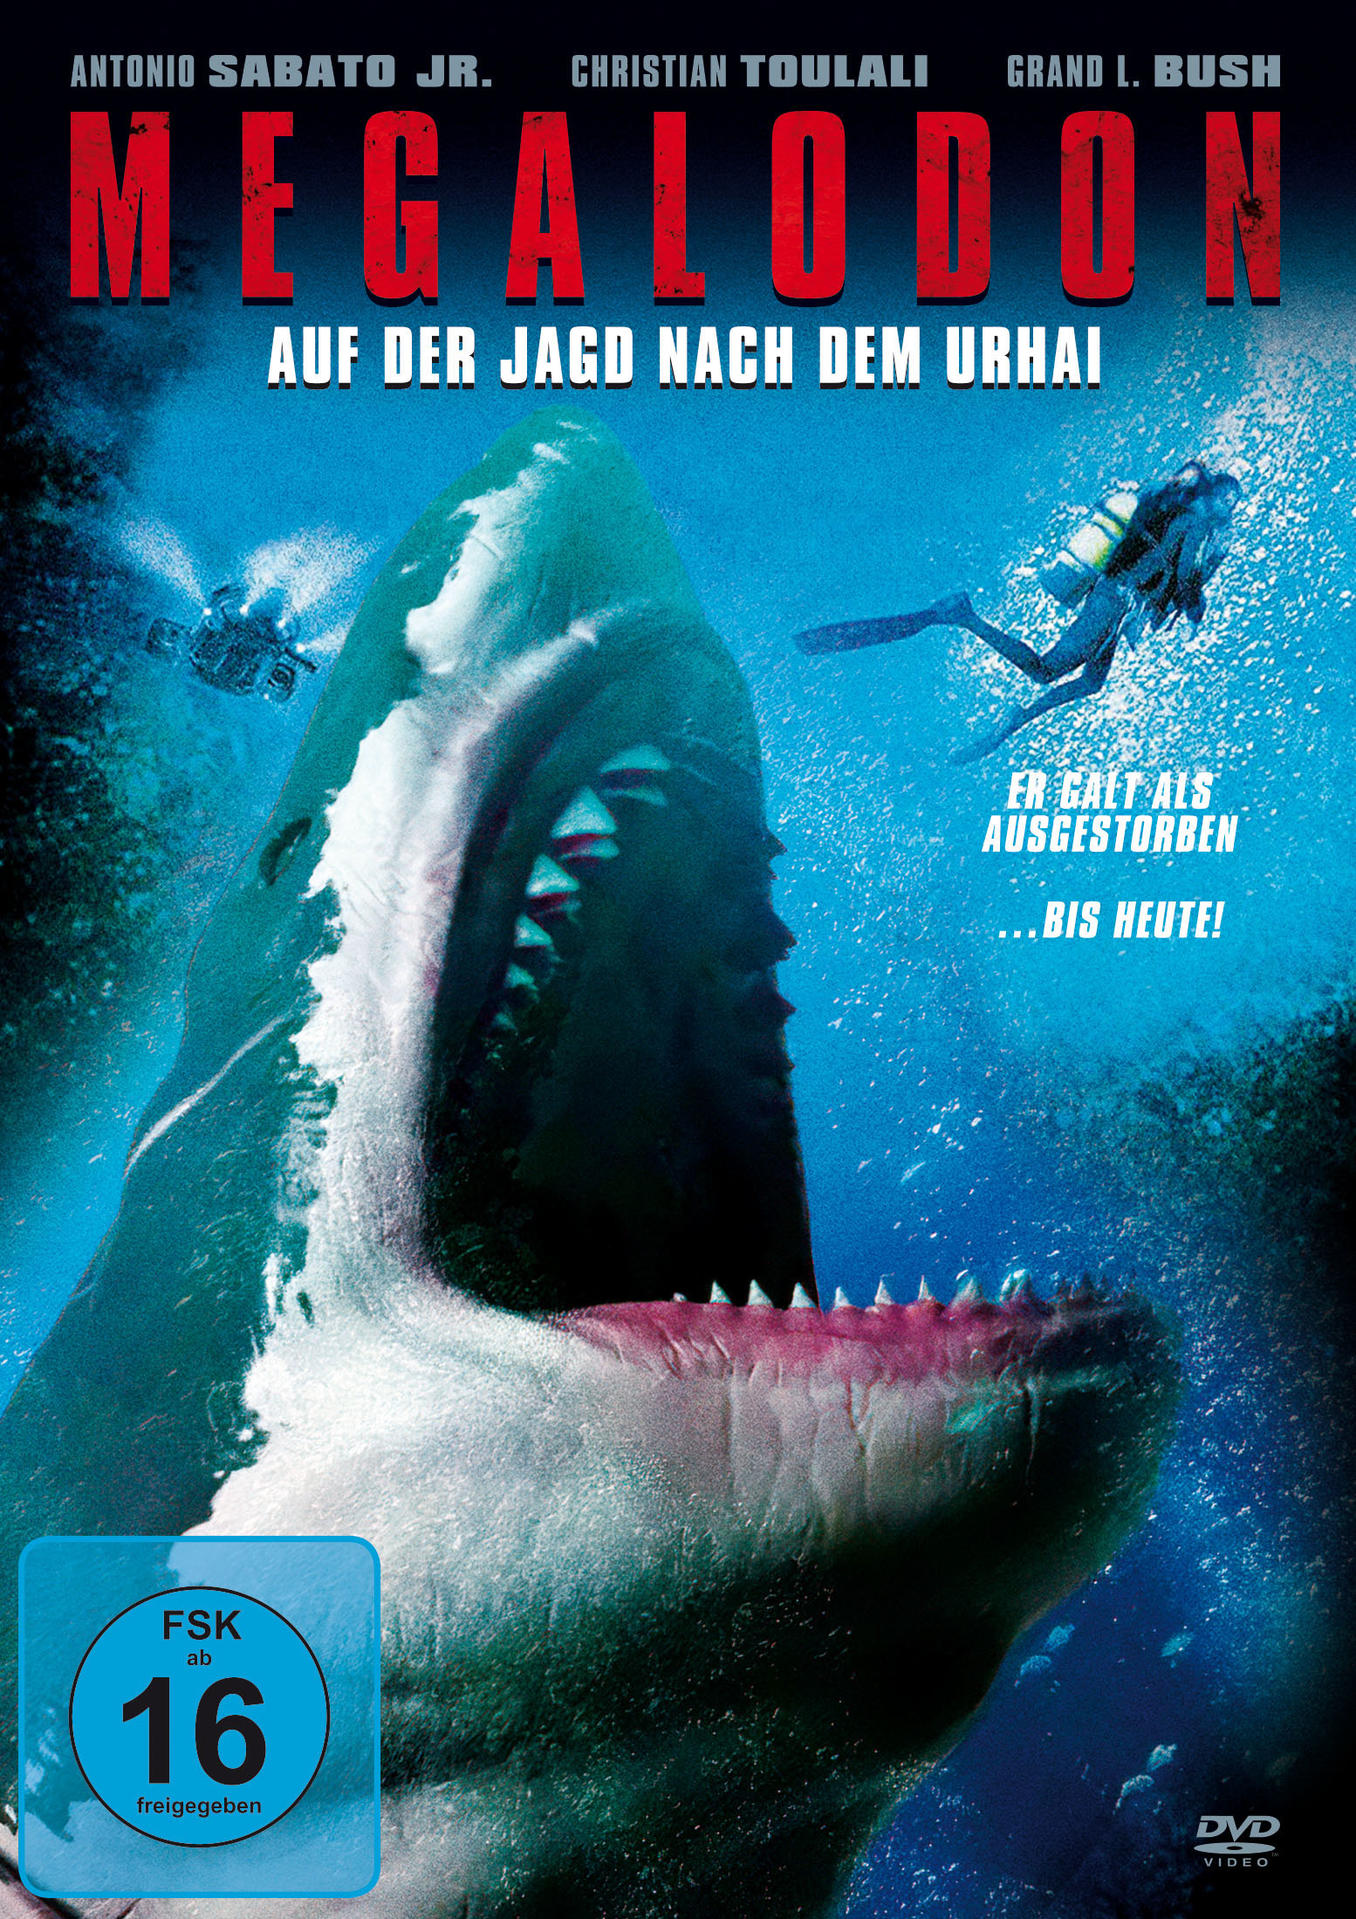 Urhai DVD dem Megalodon-Auf Jagd nach der